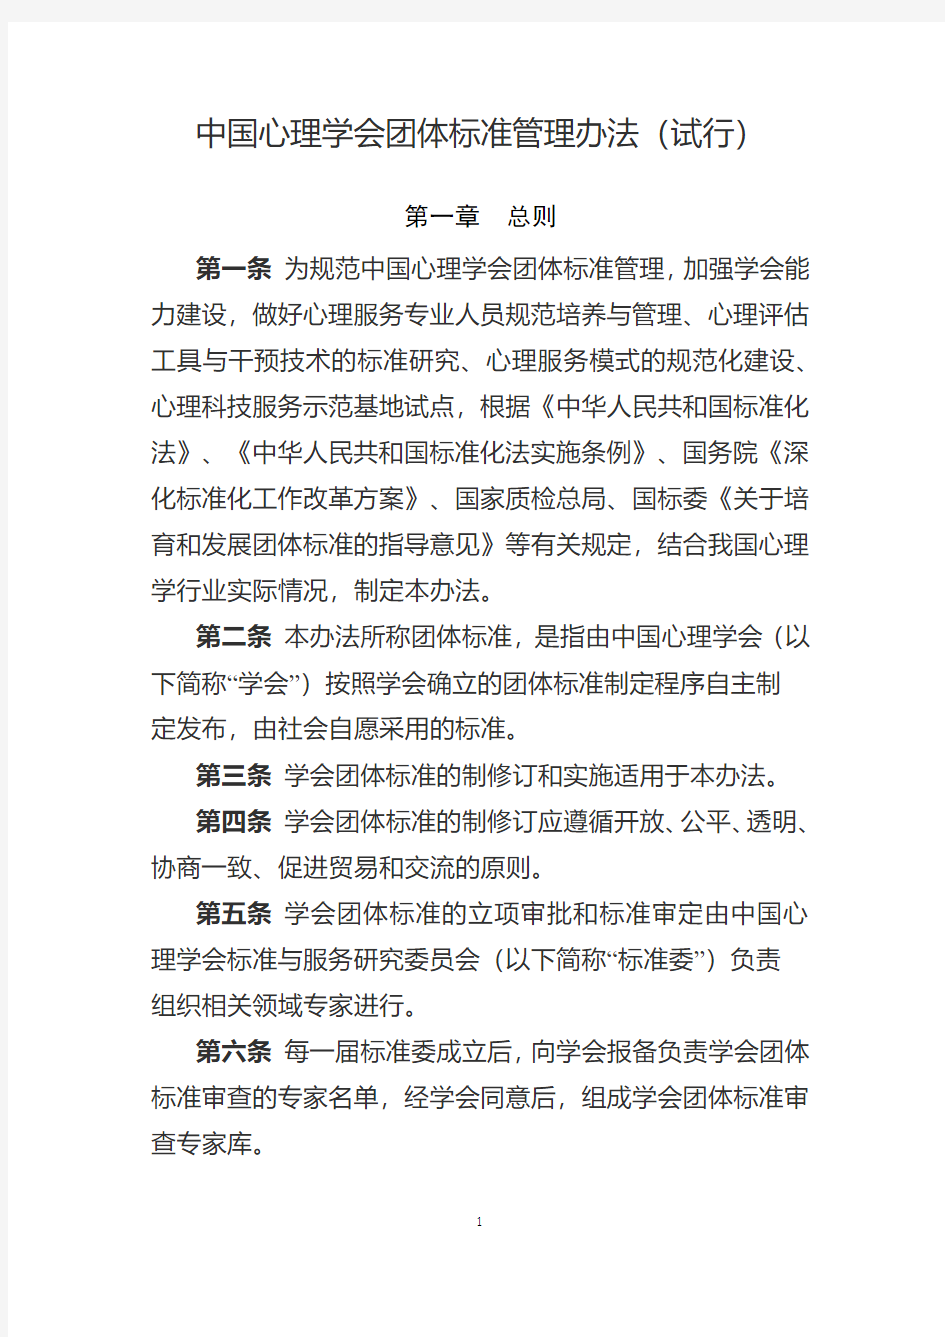 中国心理学会团体标准管理办法(试行)